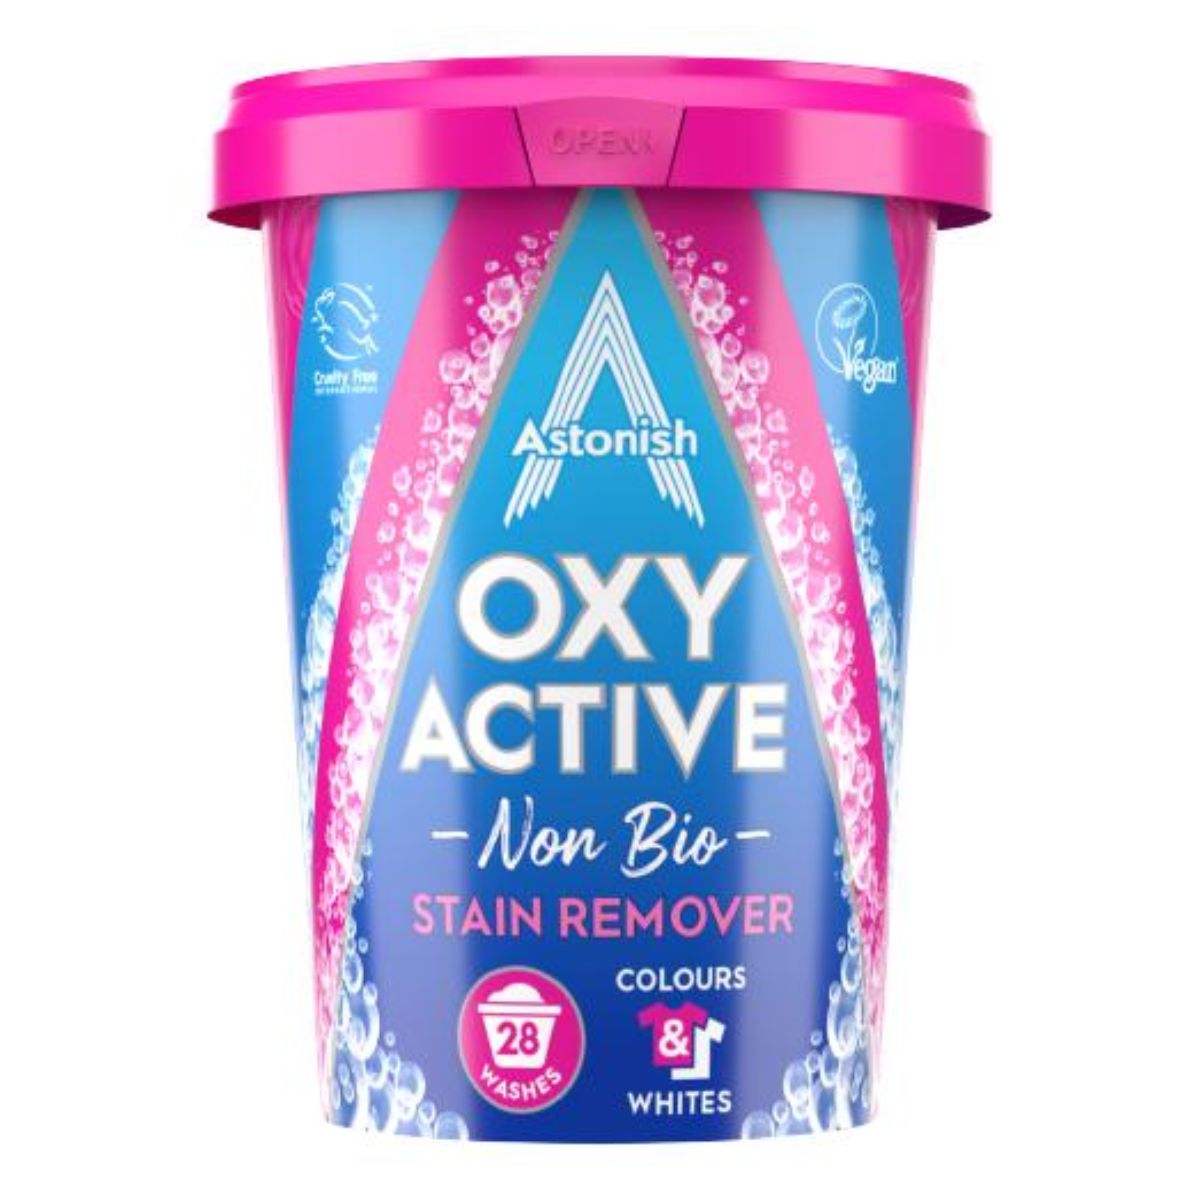 Astonish - Oxy Active Non Bio Stain Remover - 625g